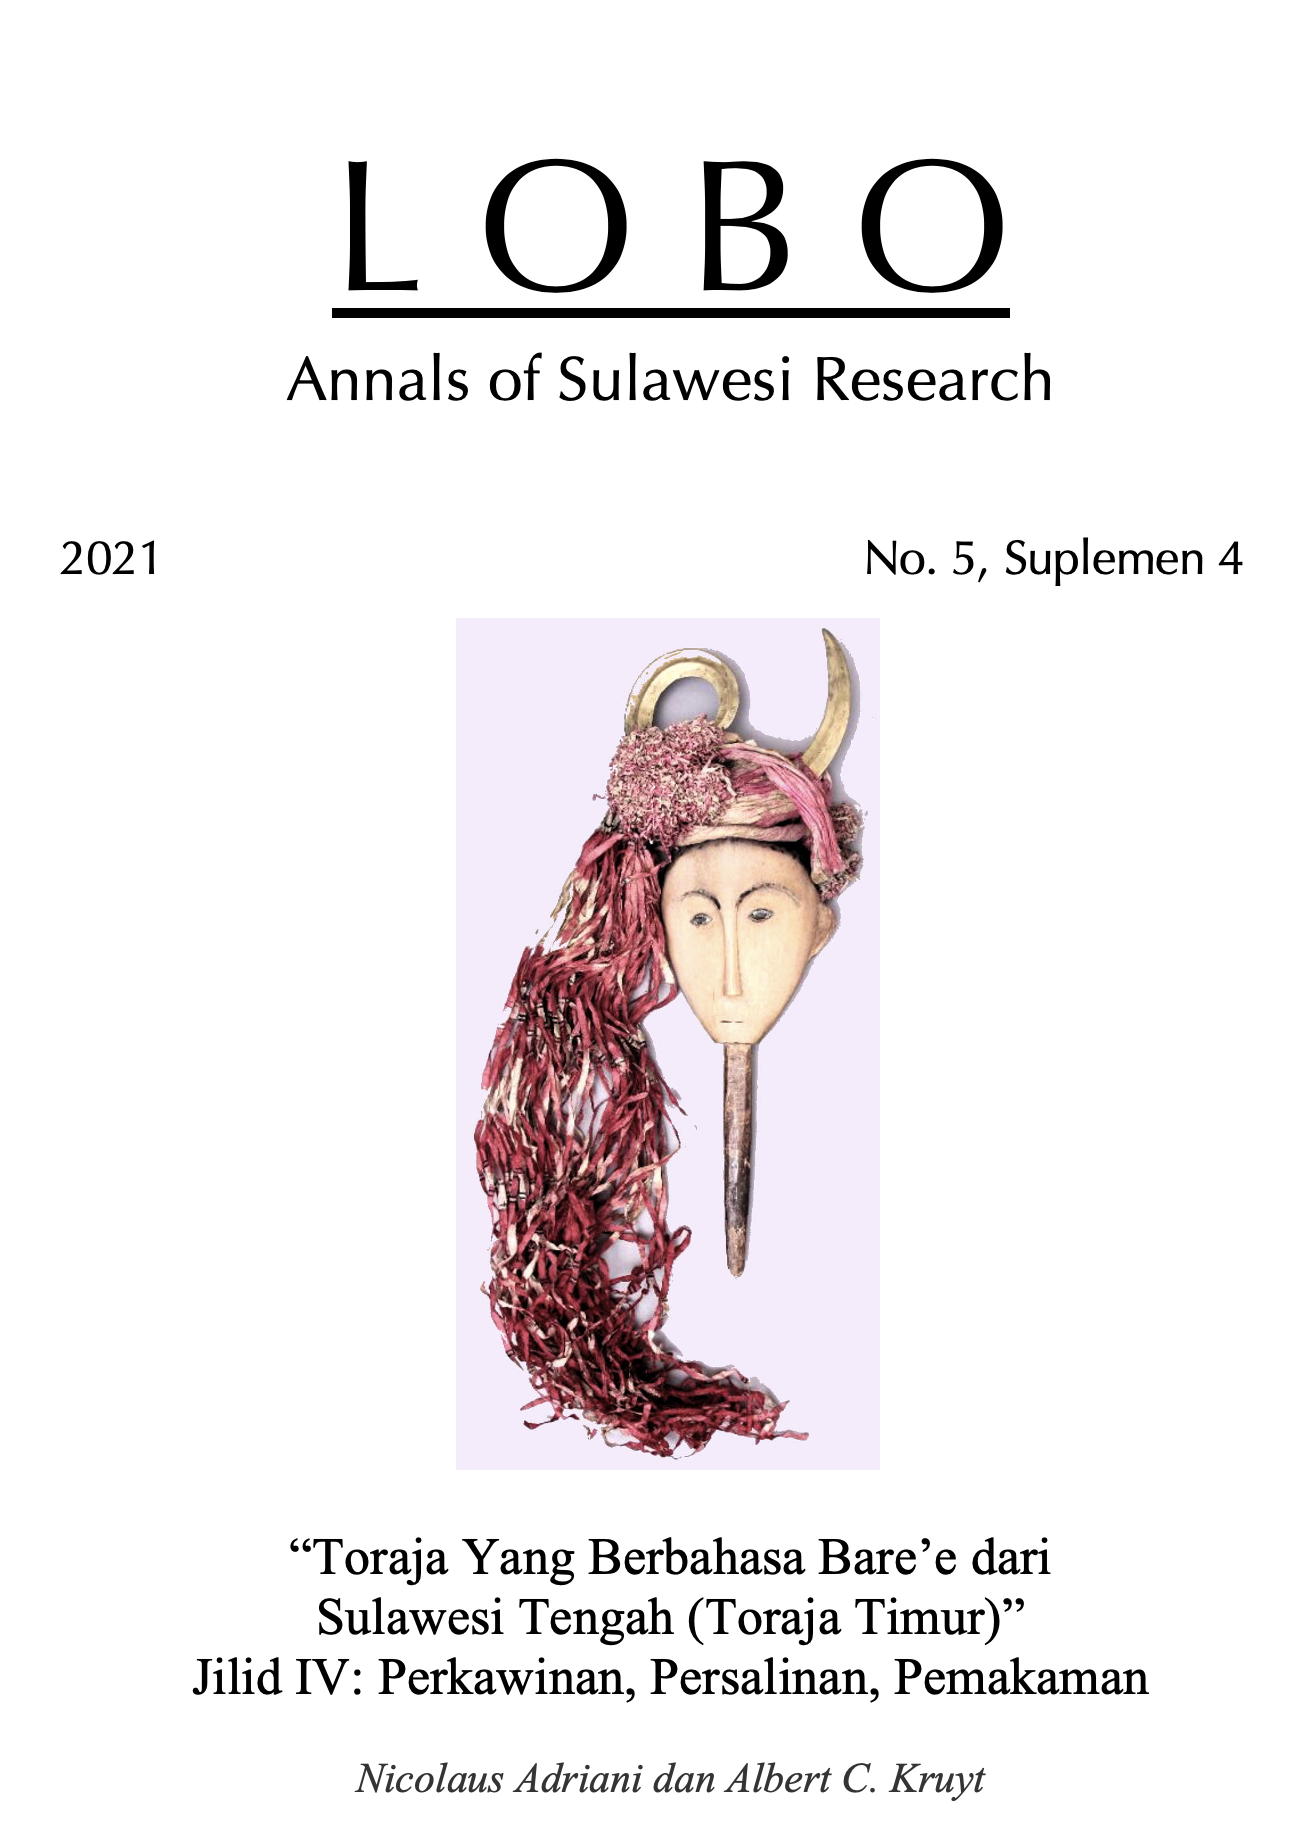 					Lihat Vol 5 No S4 (2021): Toraja Yang Berbahasa Bare’e dari Sulawesi Tengah (Toraja Timur) Jilid IV: Perkawinan, Persalinan, Pemakaman
				